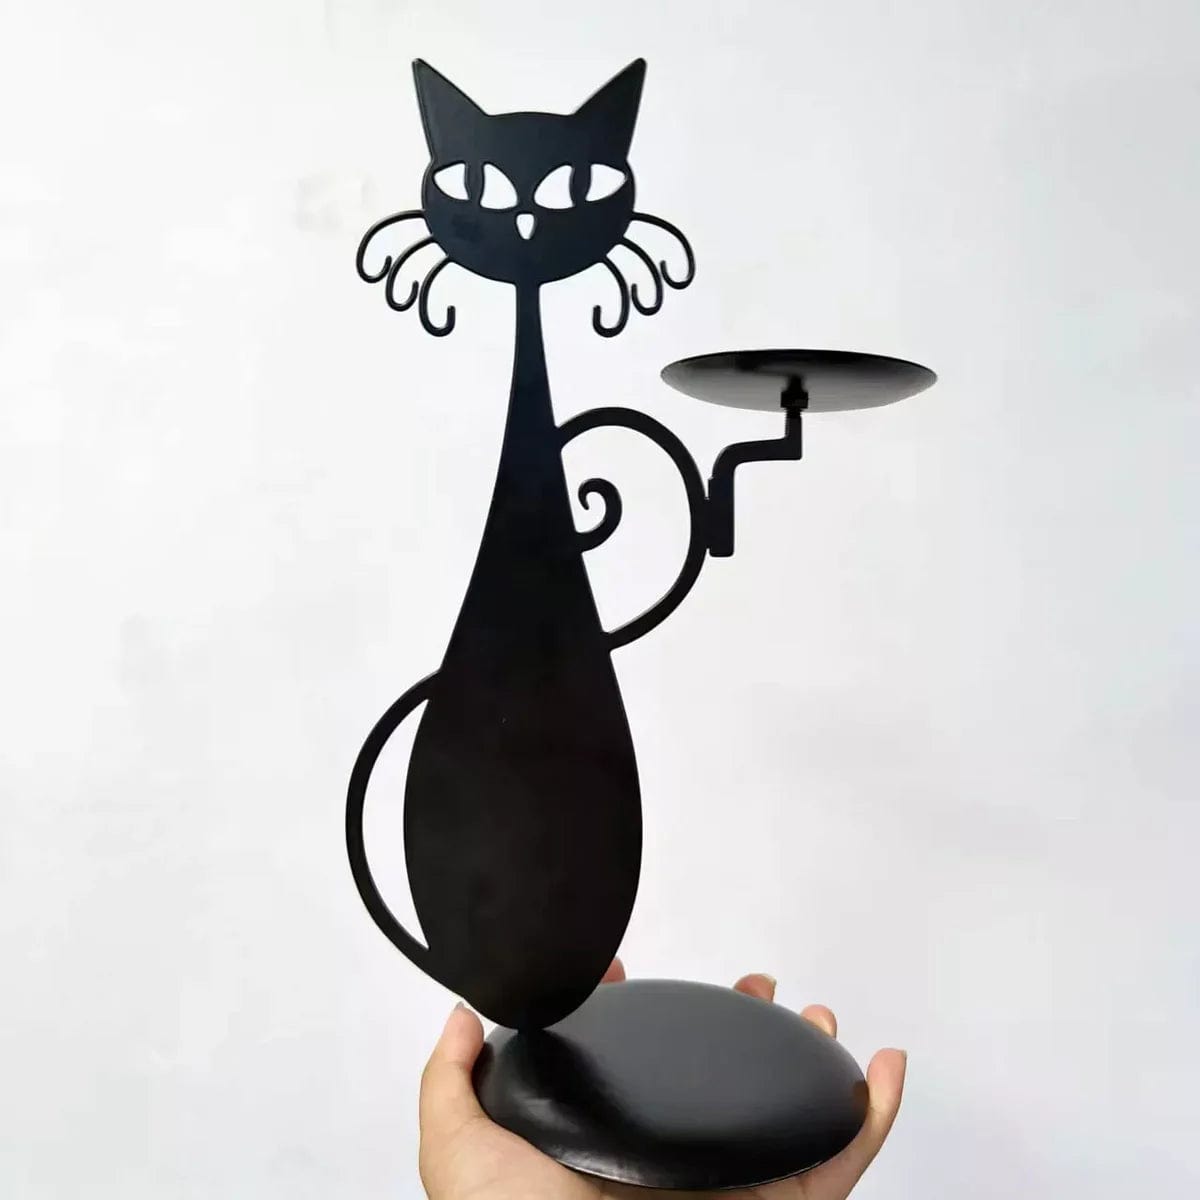 Ecup Black Cat Candle Holder | Een uniek decoratie stuk voor jouw huis!